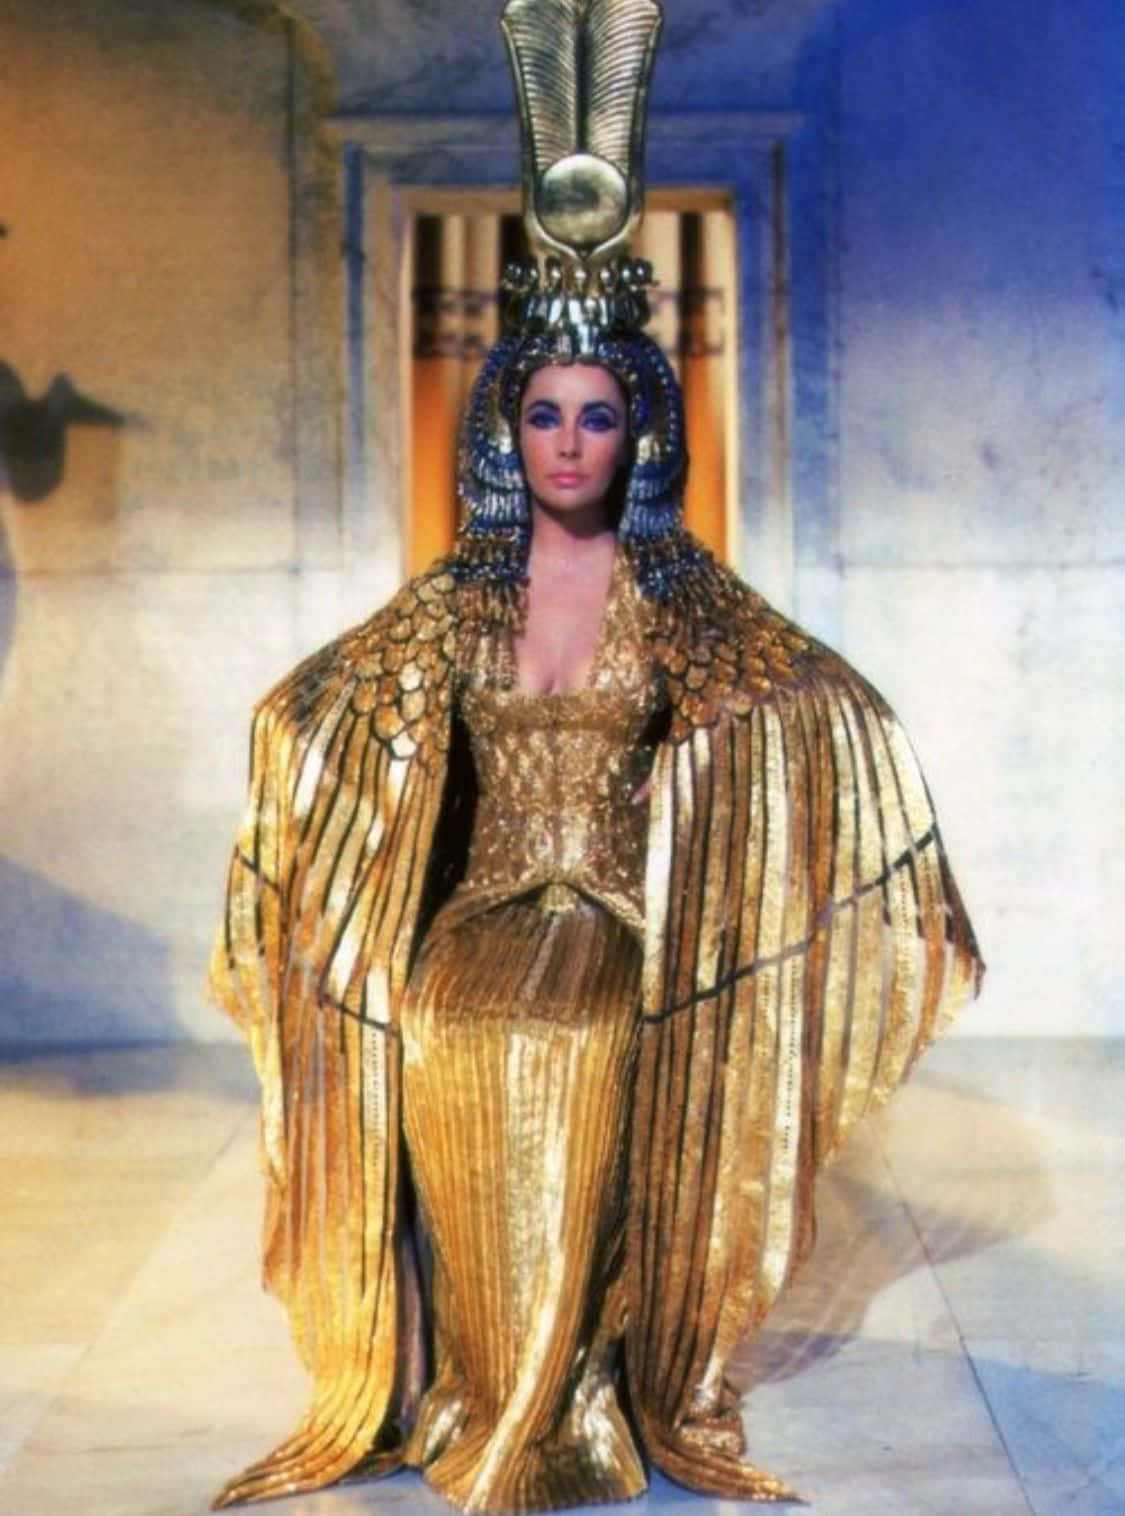 Cleopatra, the last active Pharaoh of ancient Egypt